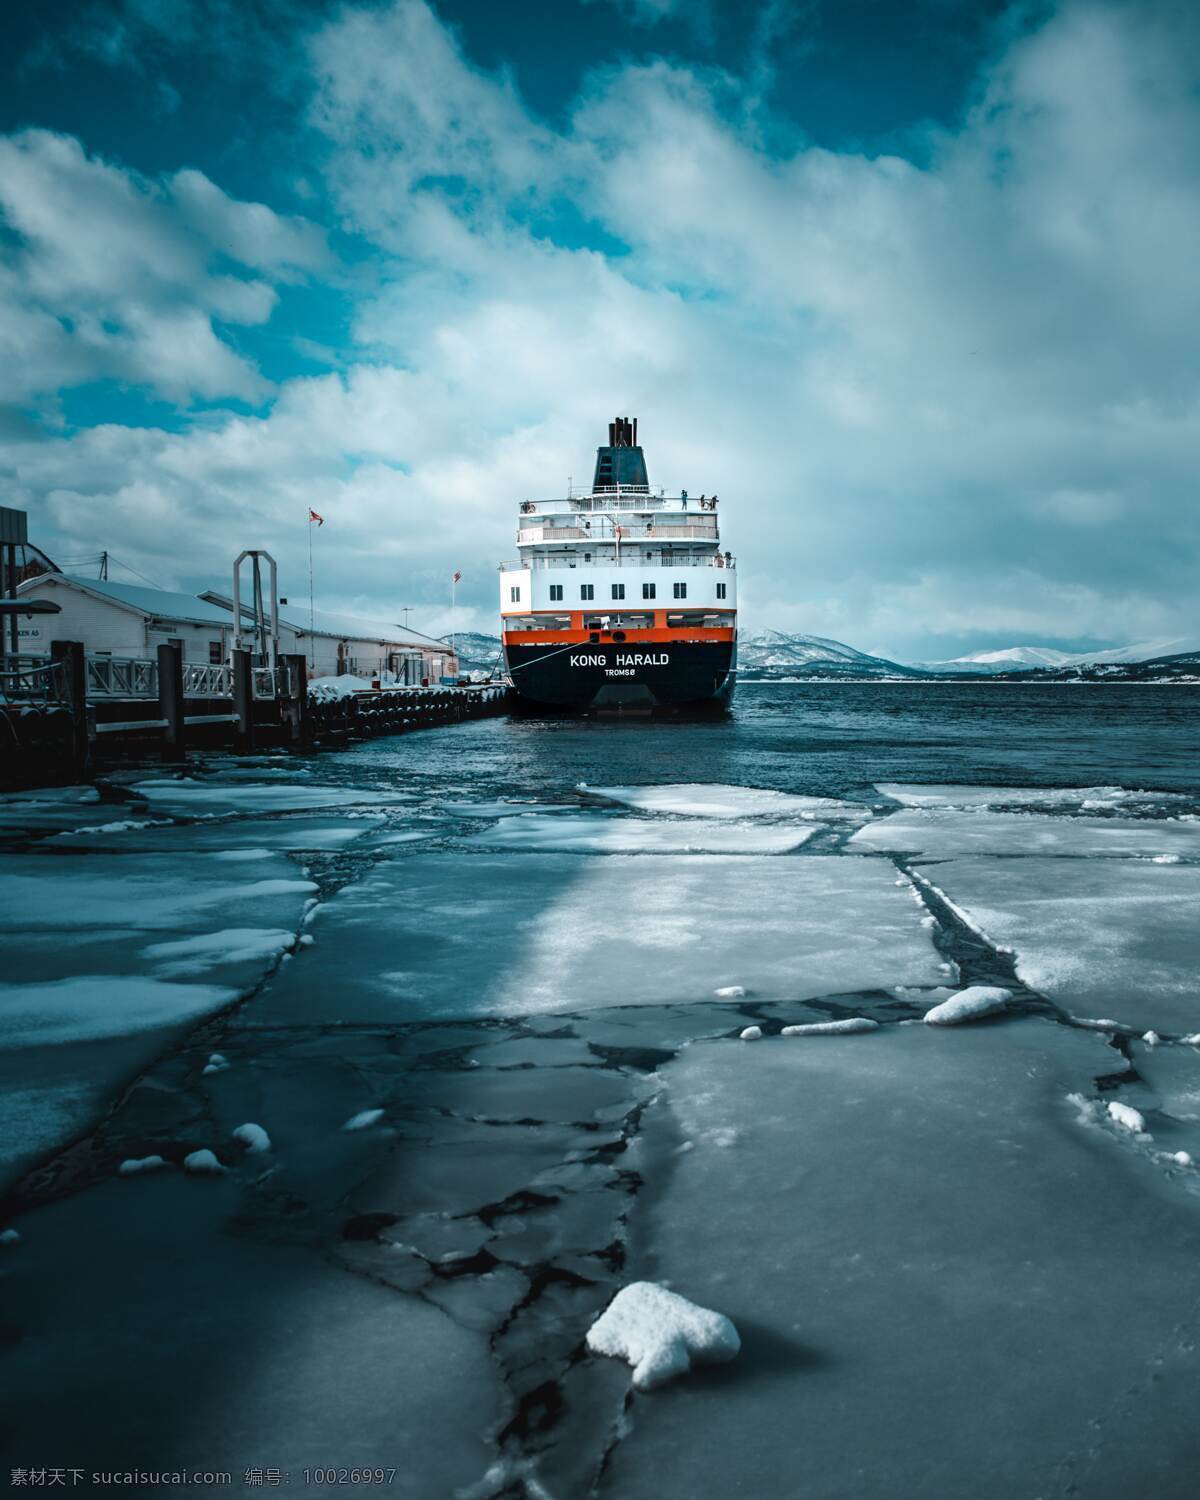 冰川游轮 冰面 水面 游轮 船 自然景观 山水风景